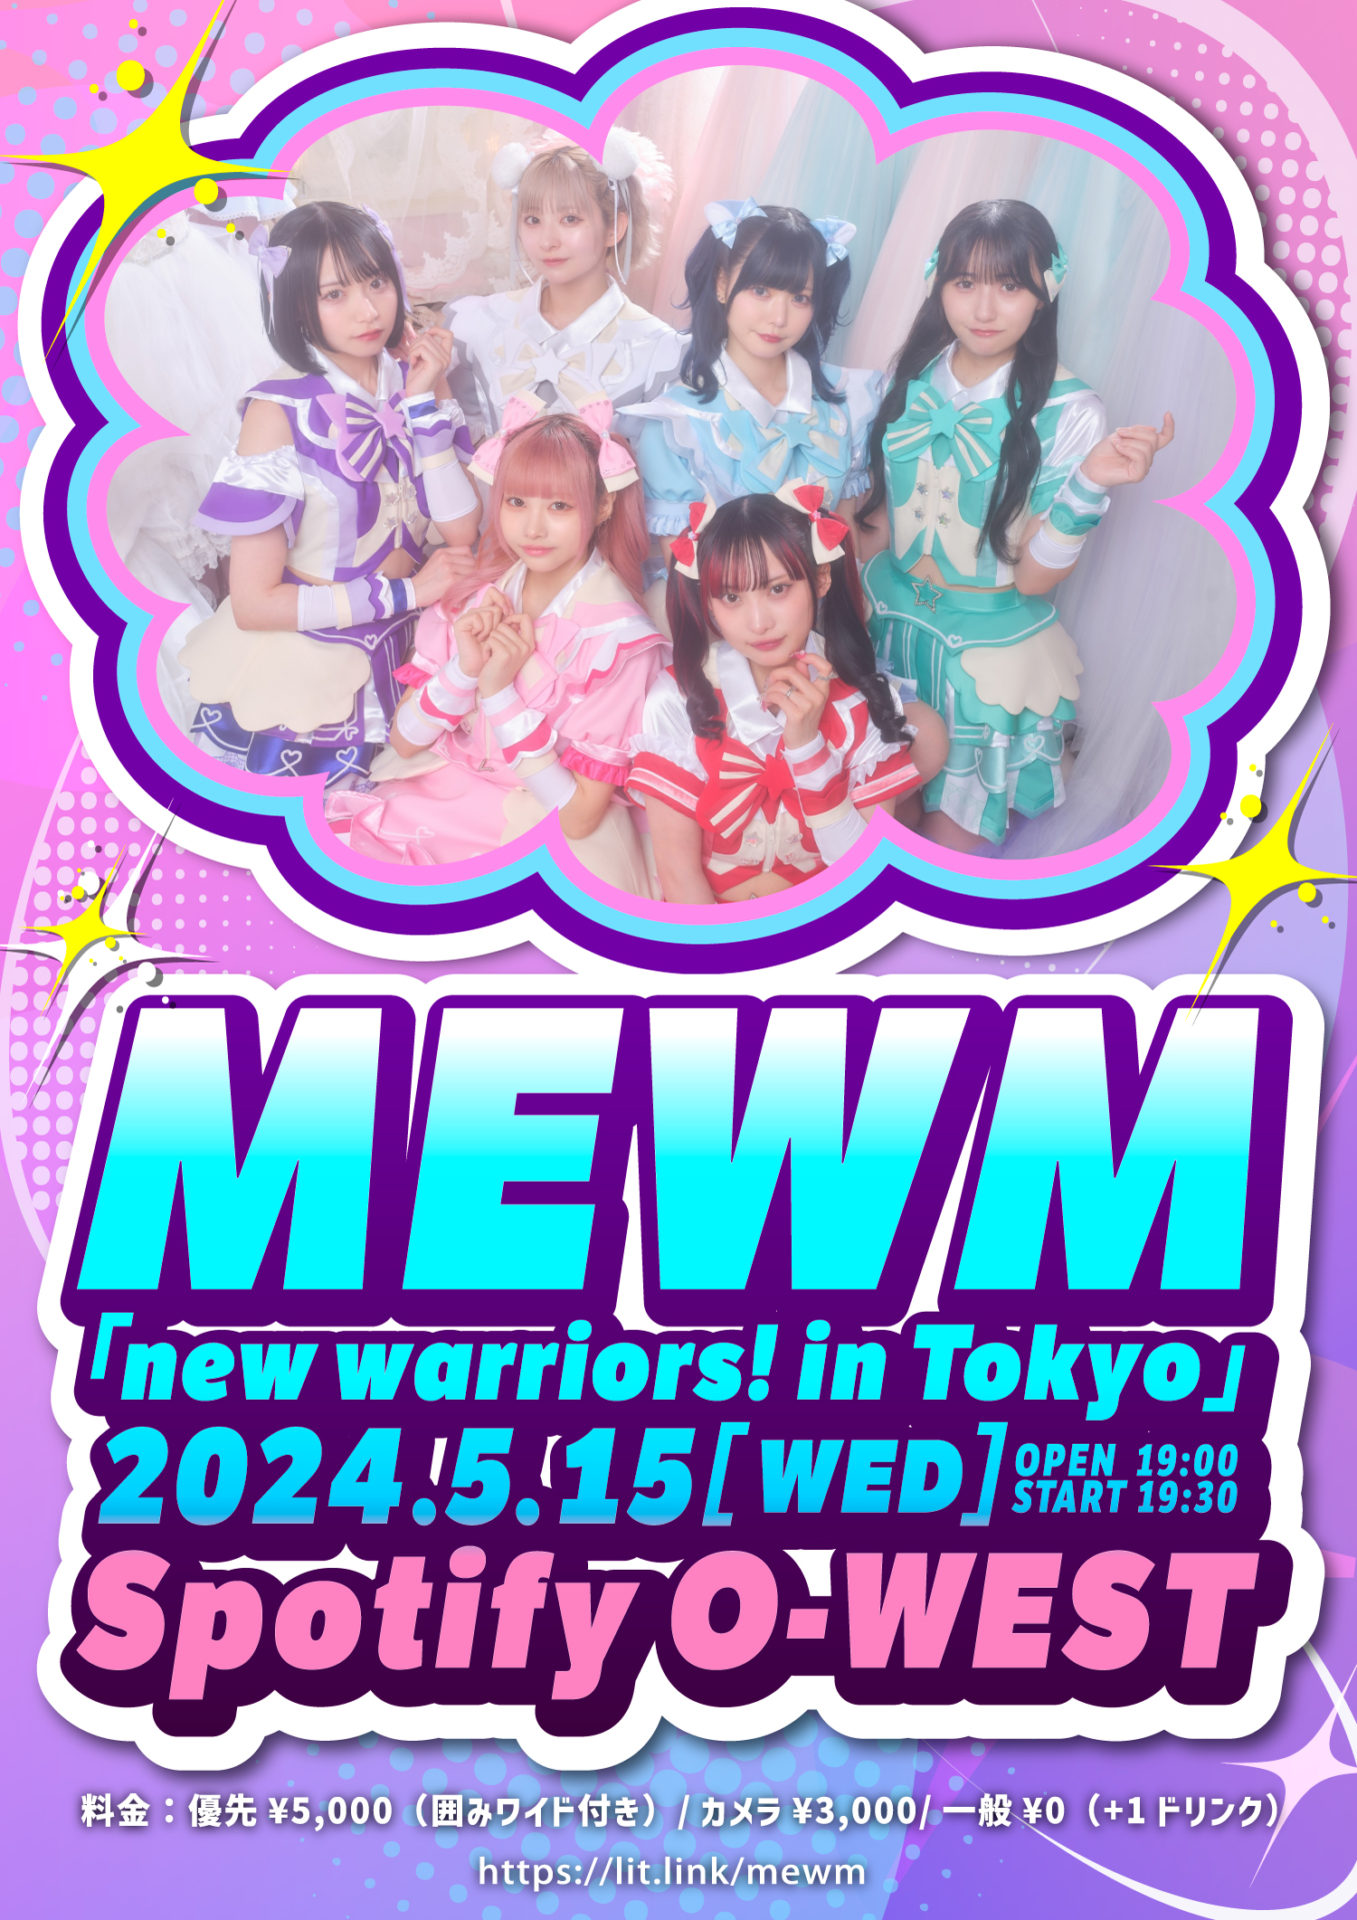 「new warriors! in Tokyo」